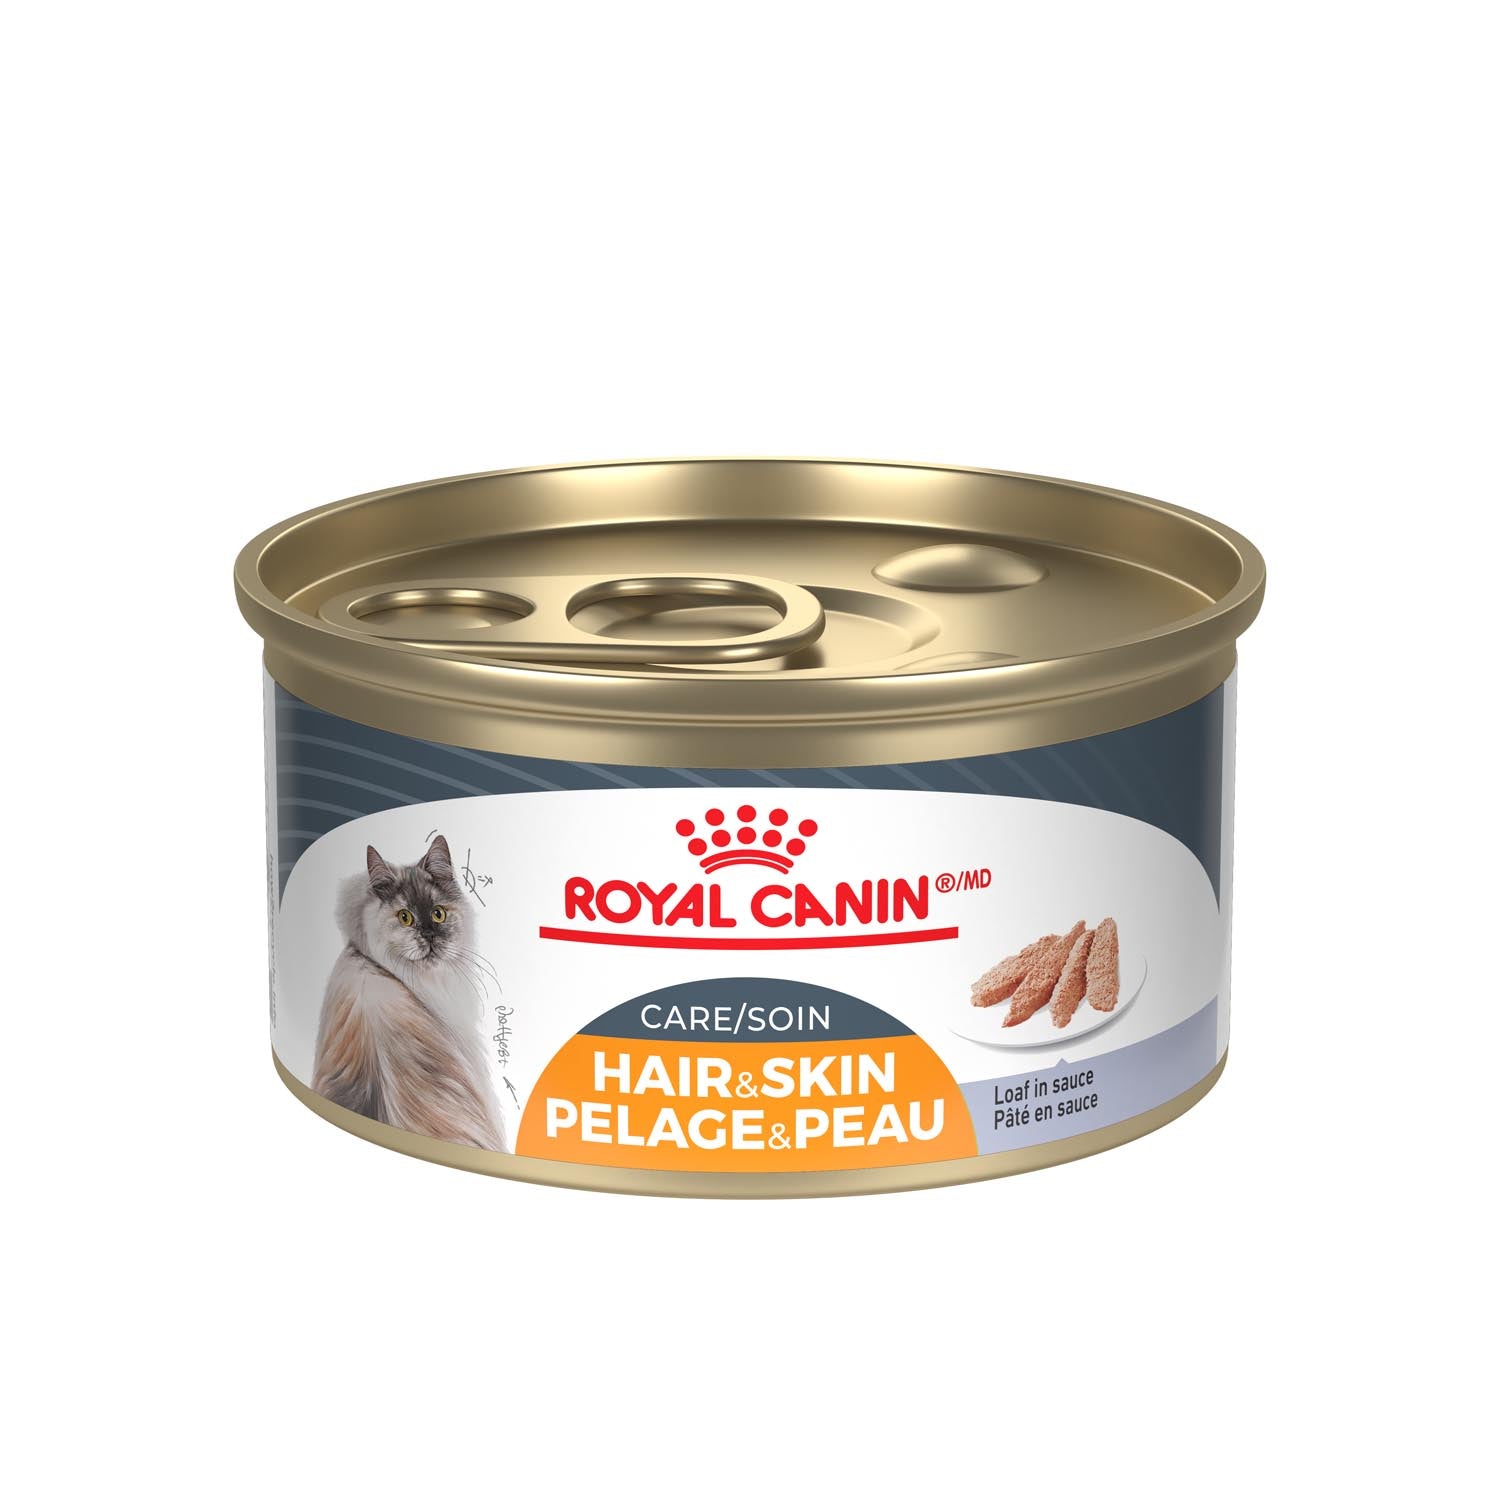 Royal Canin soin pelage & peau -pâté en sauce 85g